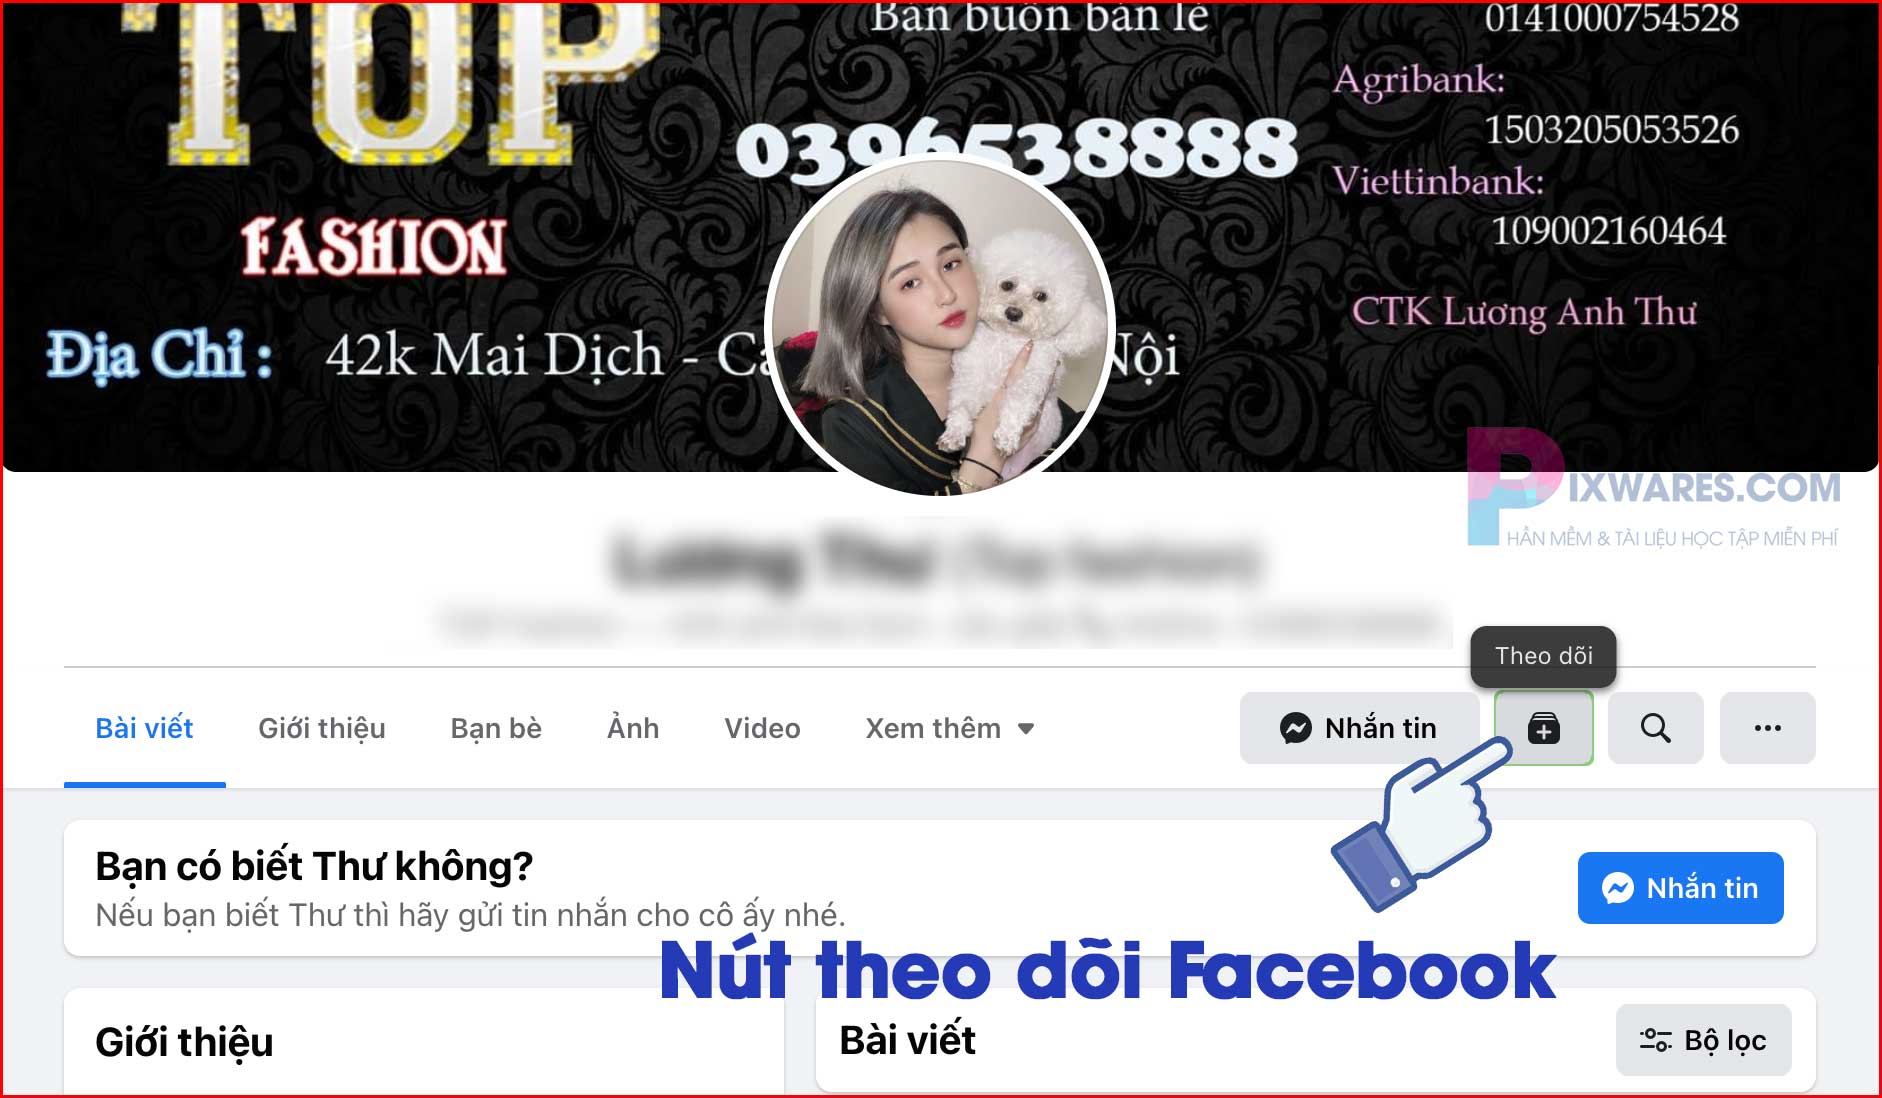 nut-theo-doi-tren-facebook-la-gi